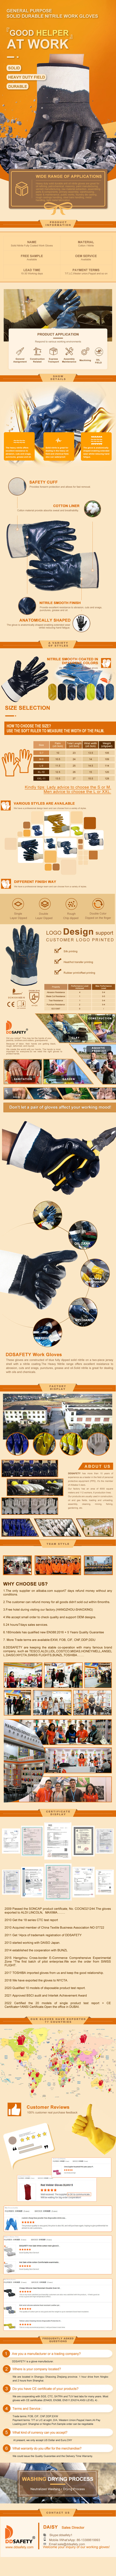 Safety Gloves - DCN310 Safety Gloves - DCN310 gloves,Safety Gloves